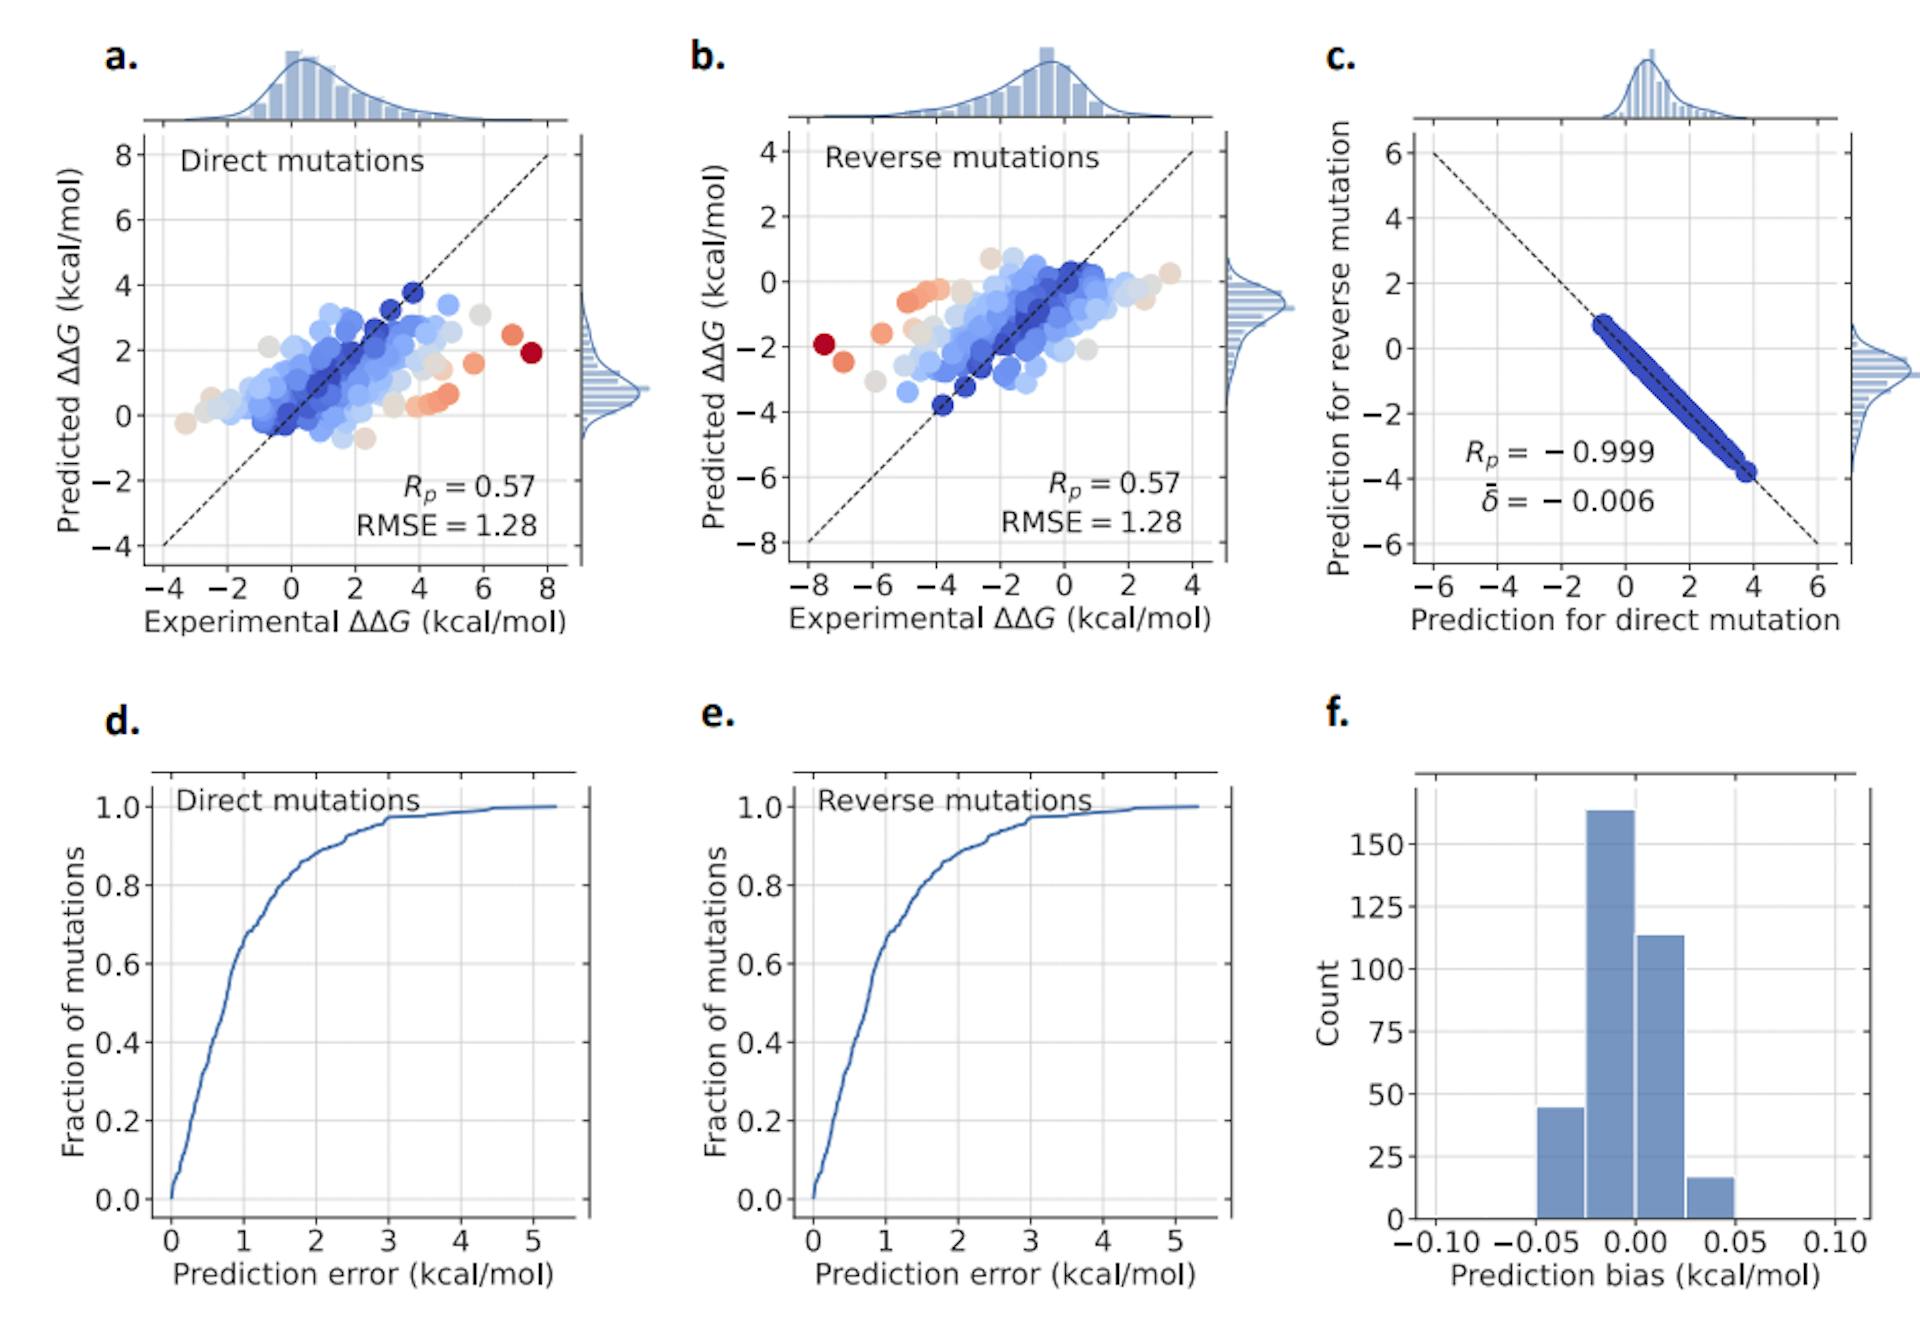 Figura 3: Resultados de nuestro modelo GGL-PPI2 para el conjunto de datos Ssym. En (a), se representan las mutaciones directas, mientras que (b) presenta los resultados de las mutaciones inversas. El espectro de colores, que va del azul al rojo, representa la precisión de predicción correspondiente, donde el azul significa mayor precisión y el rojo indica menor precisión. A